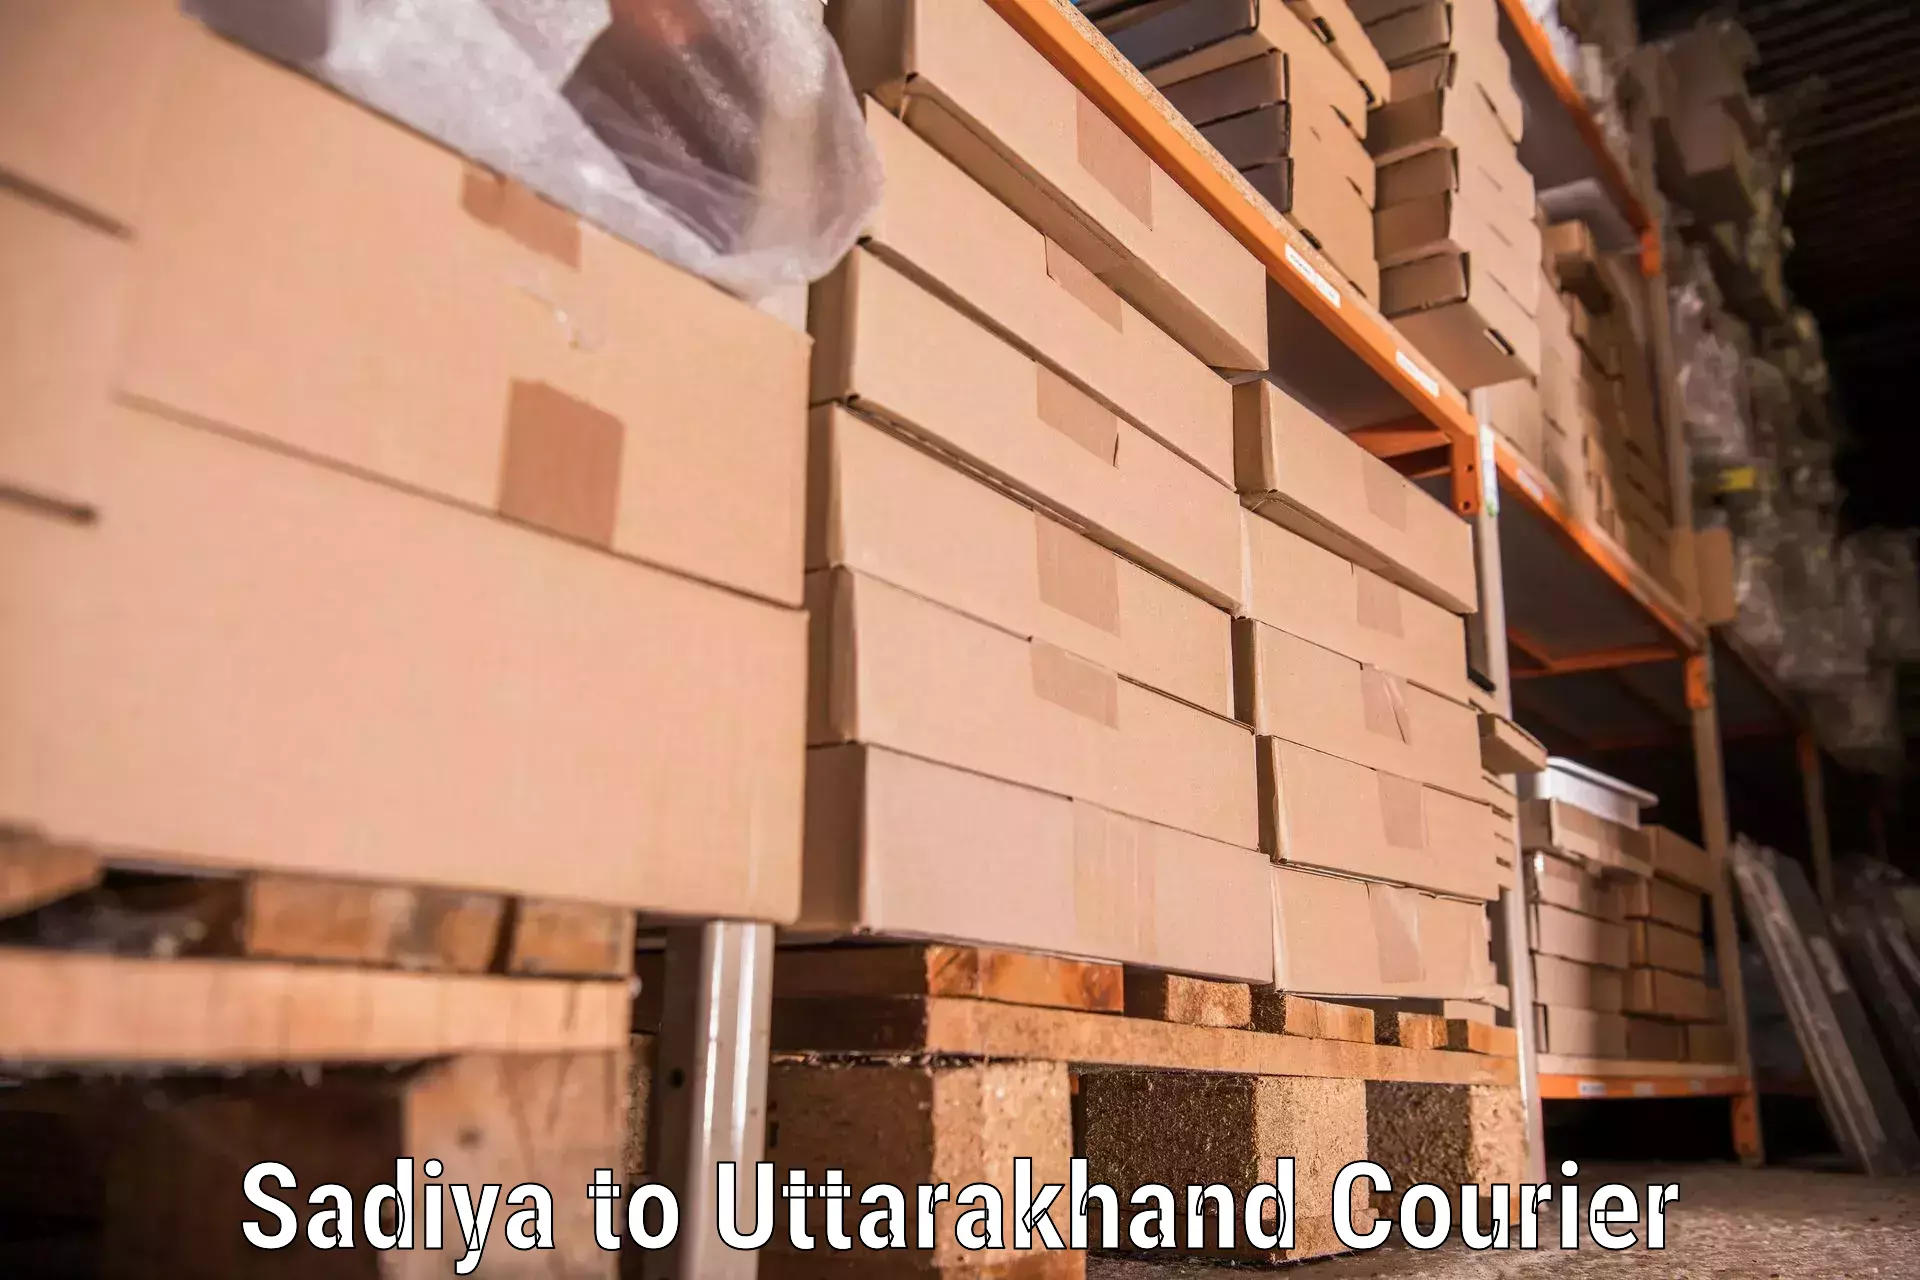 Professional home movers Sadiya to Uttarakhand